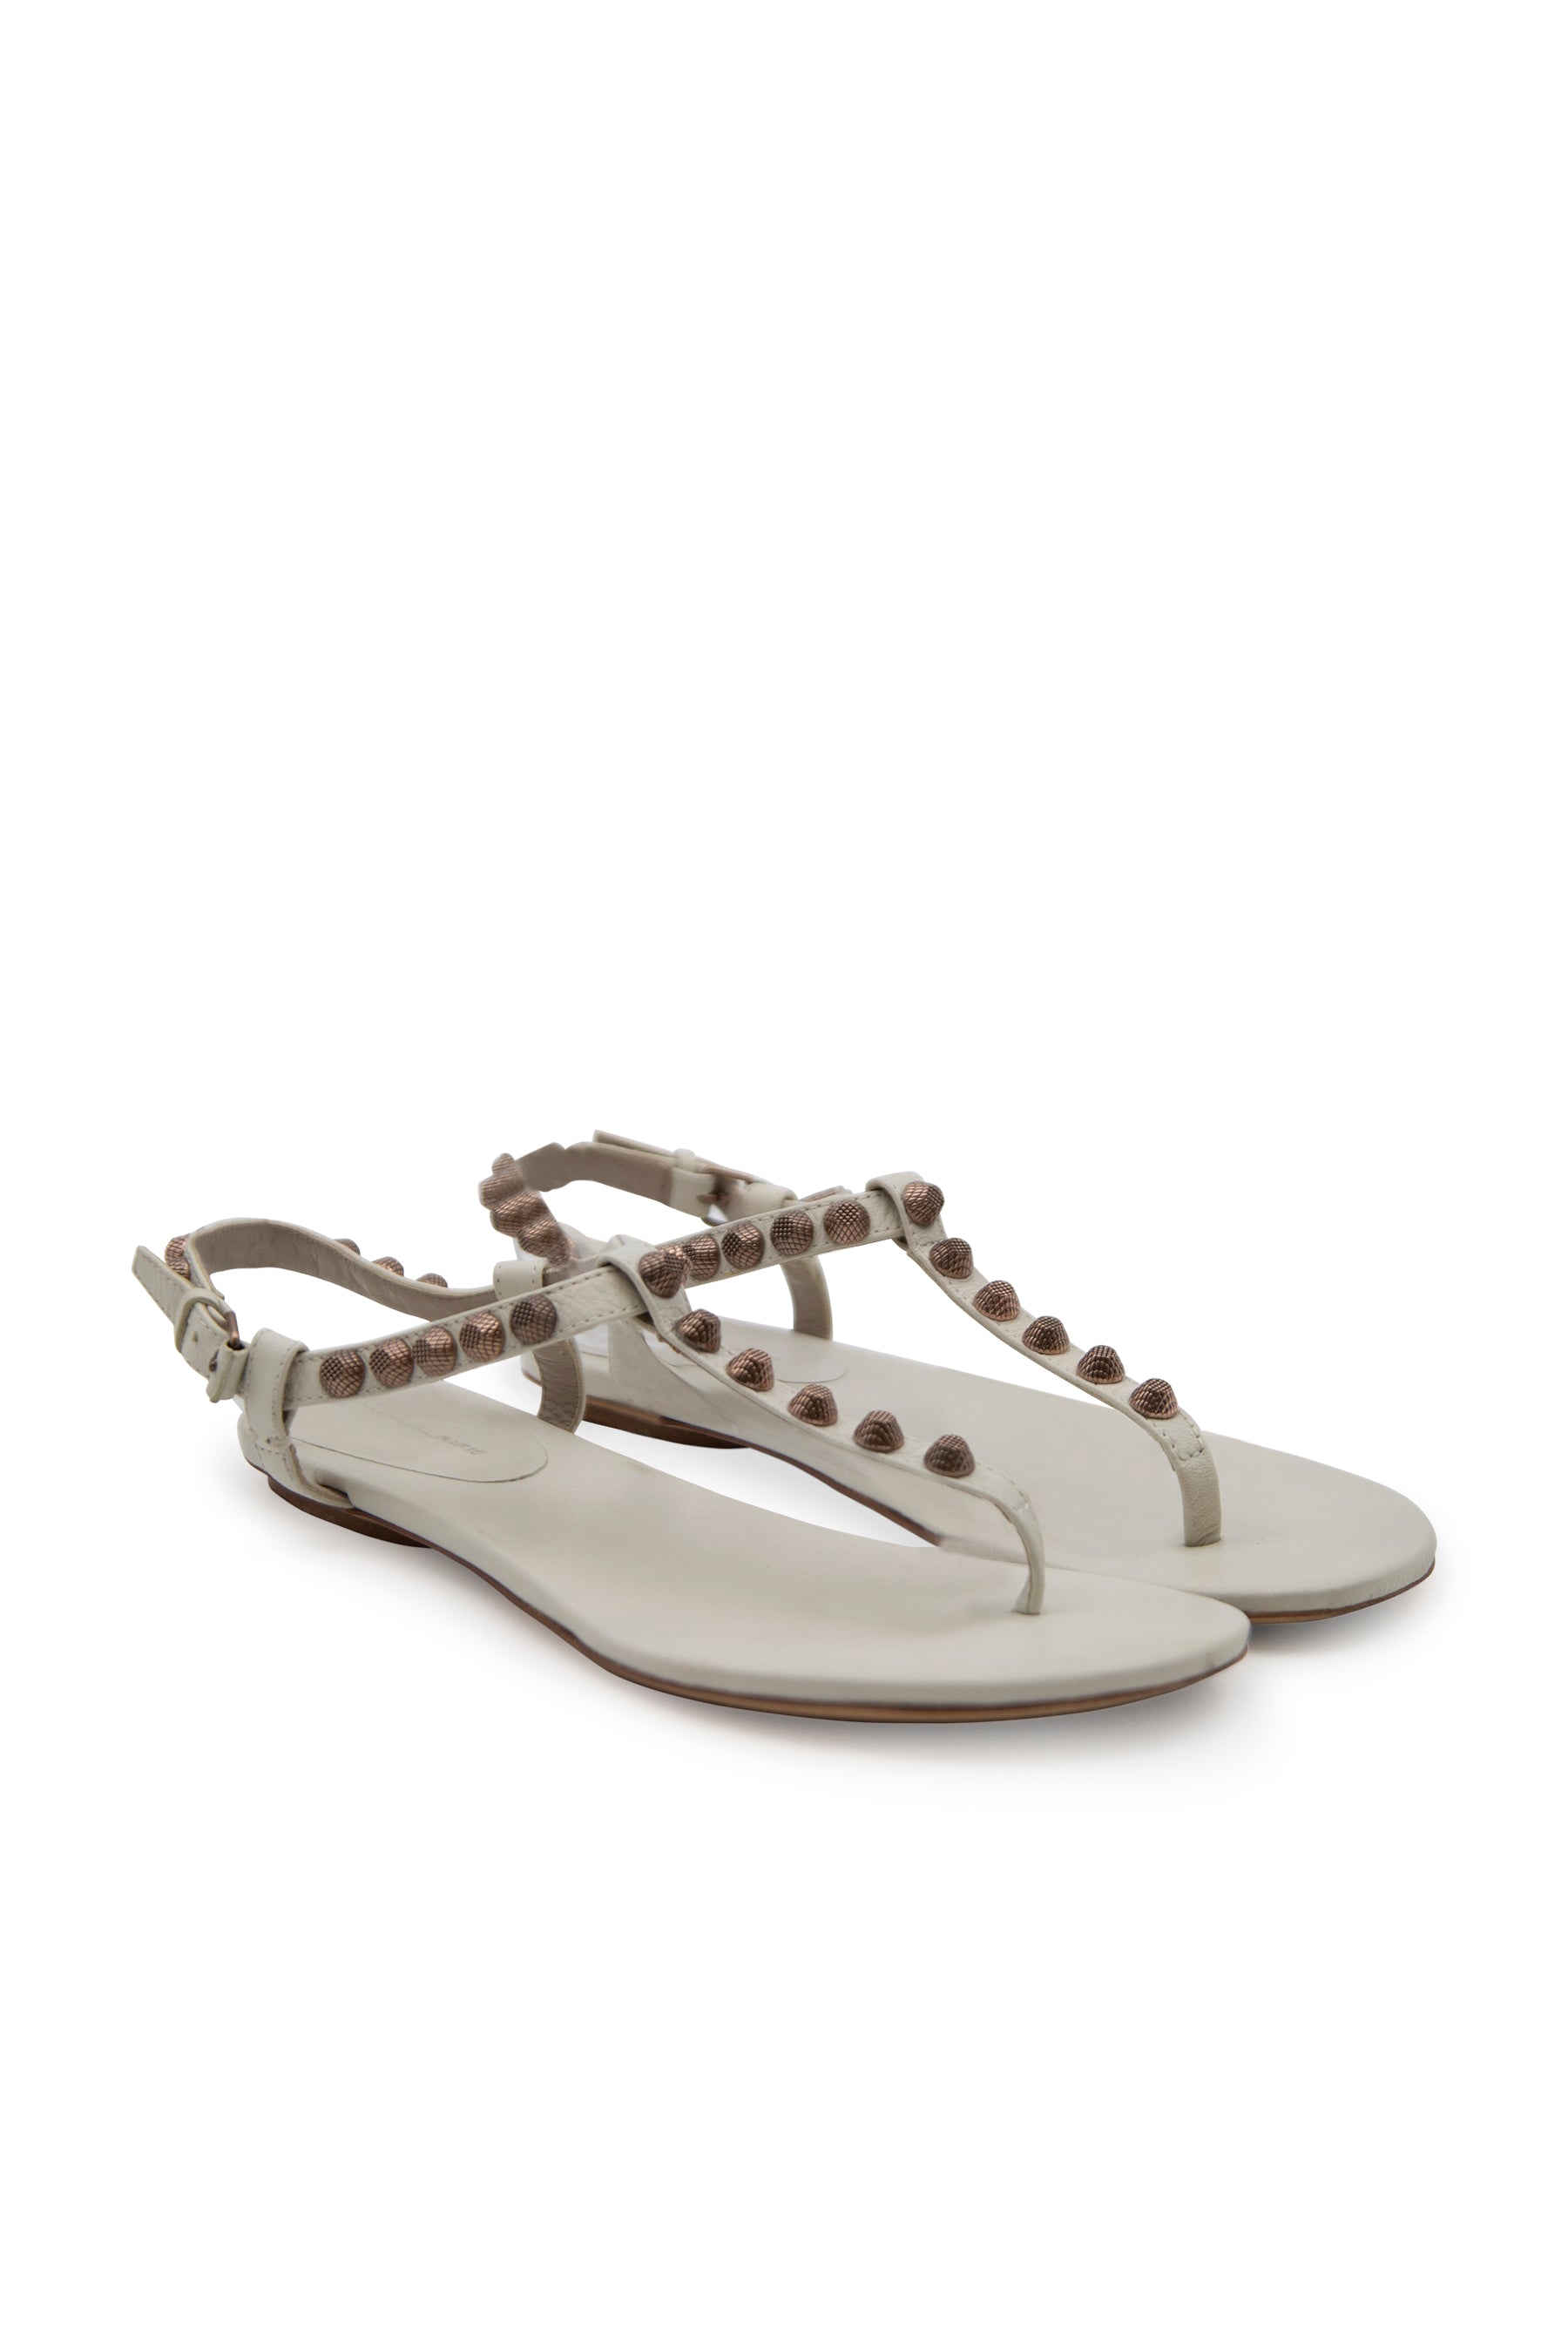 Arena Sandals in Blanco Light – Dora Maar